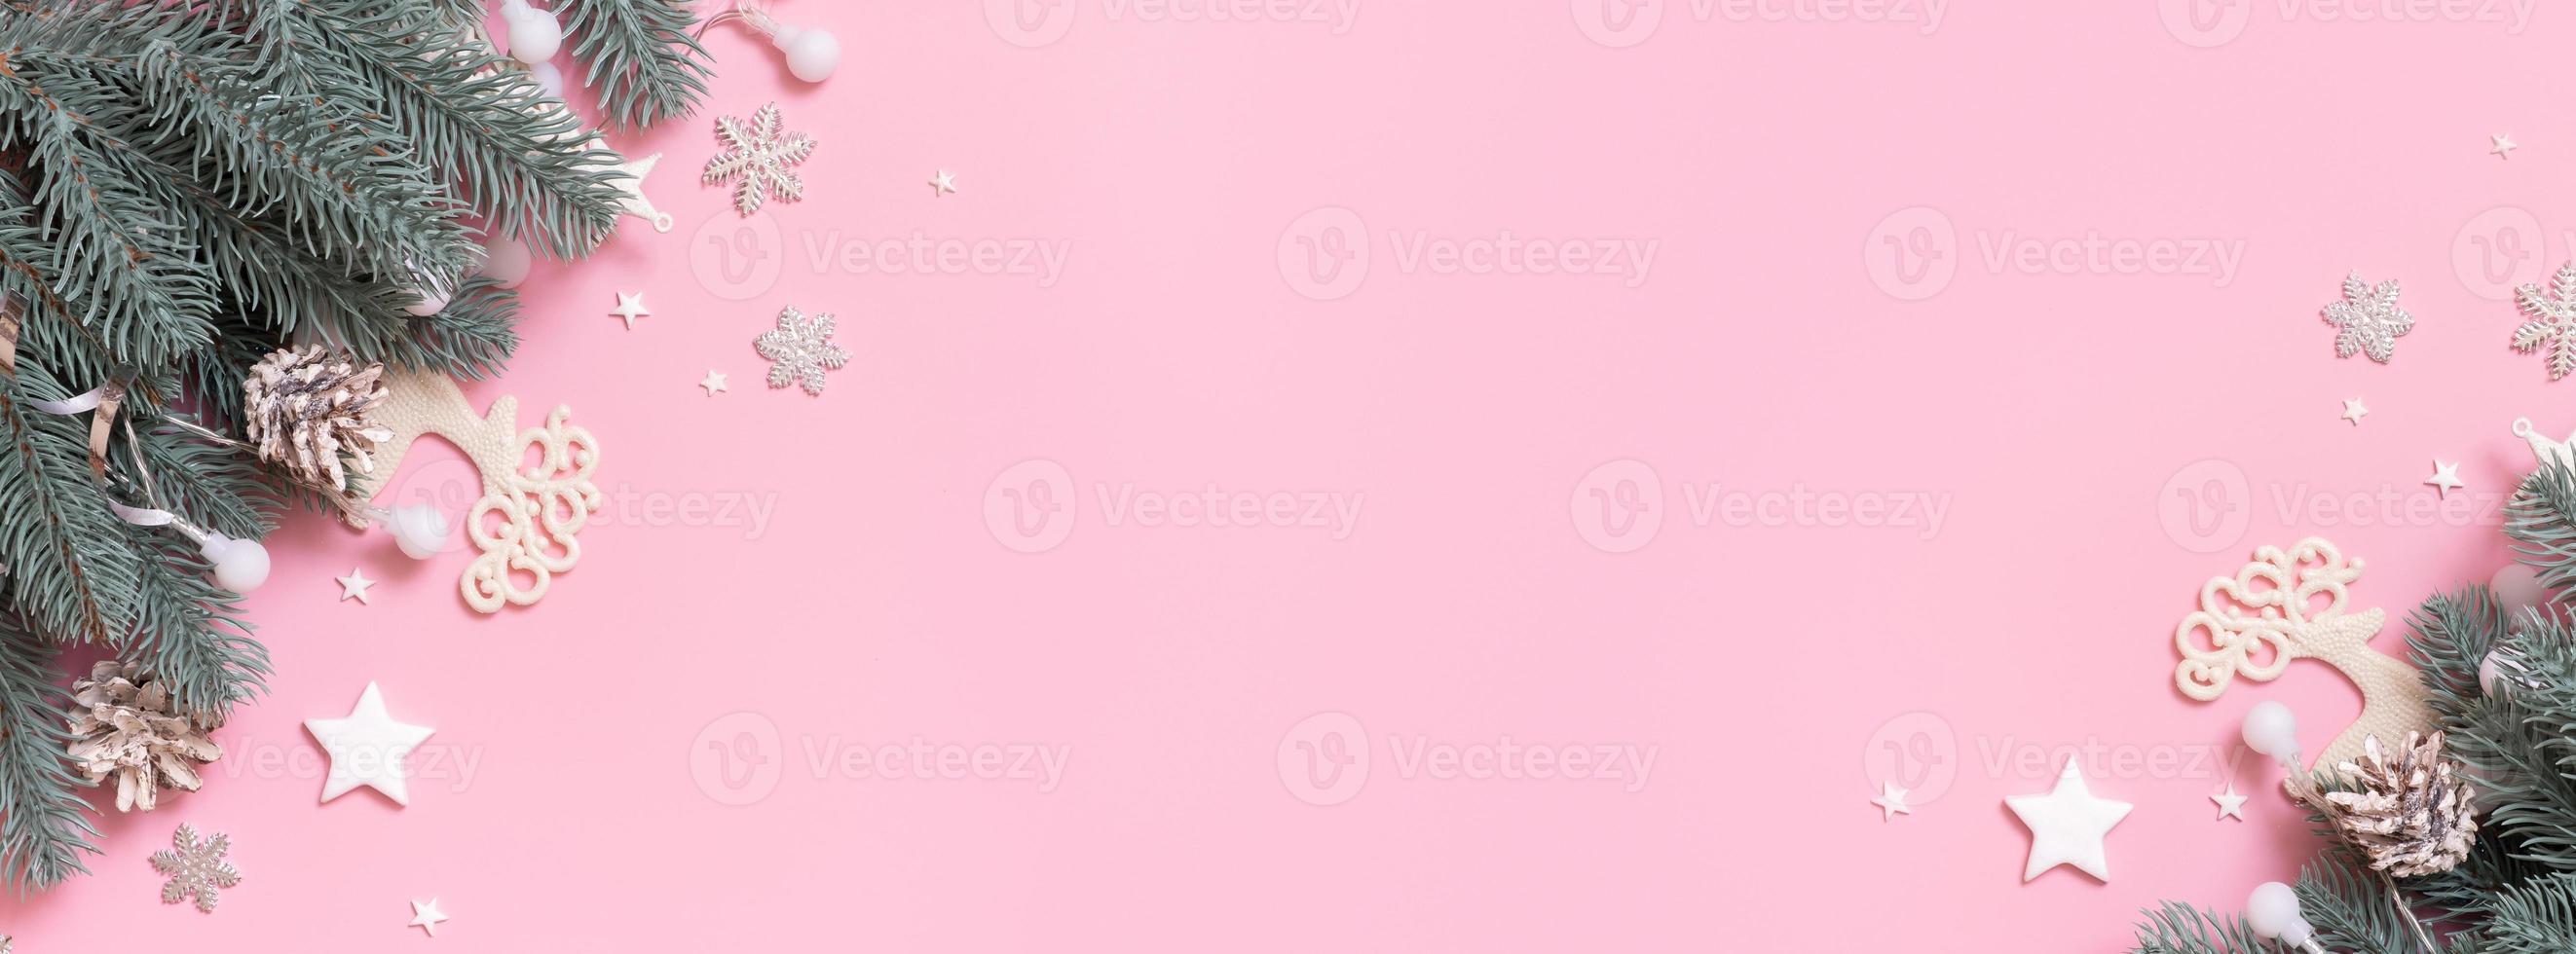 vista superior de la decoración navideña de año nuevo, plano sobre fondo rosa con espacio para copiar. tarjeta de felicitación en blanco de navidad foto